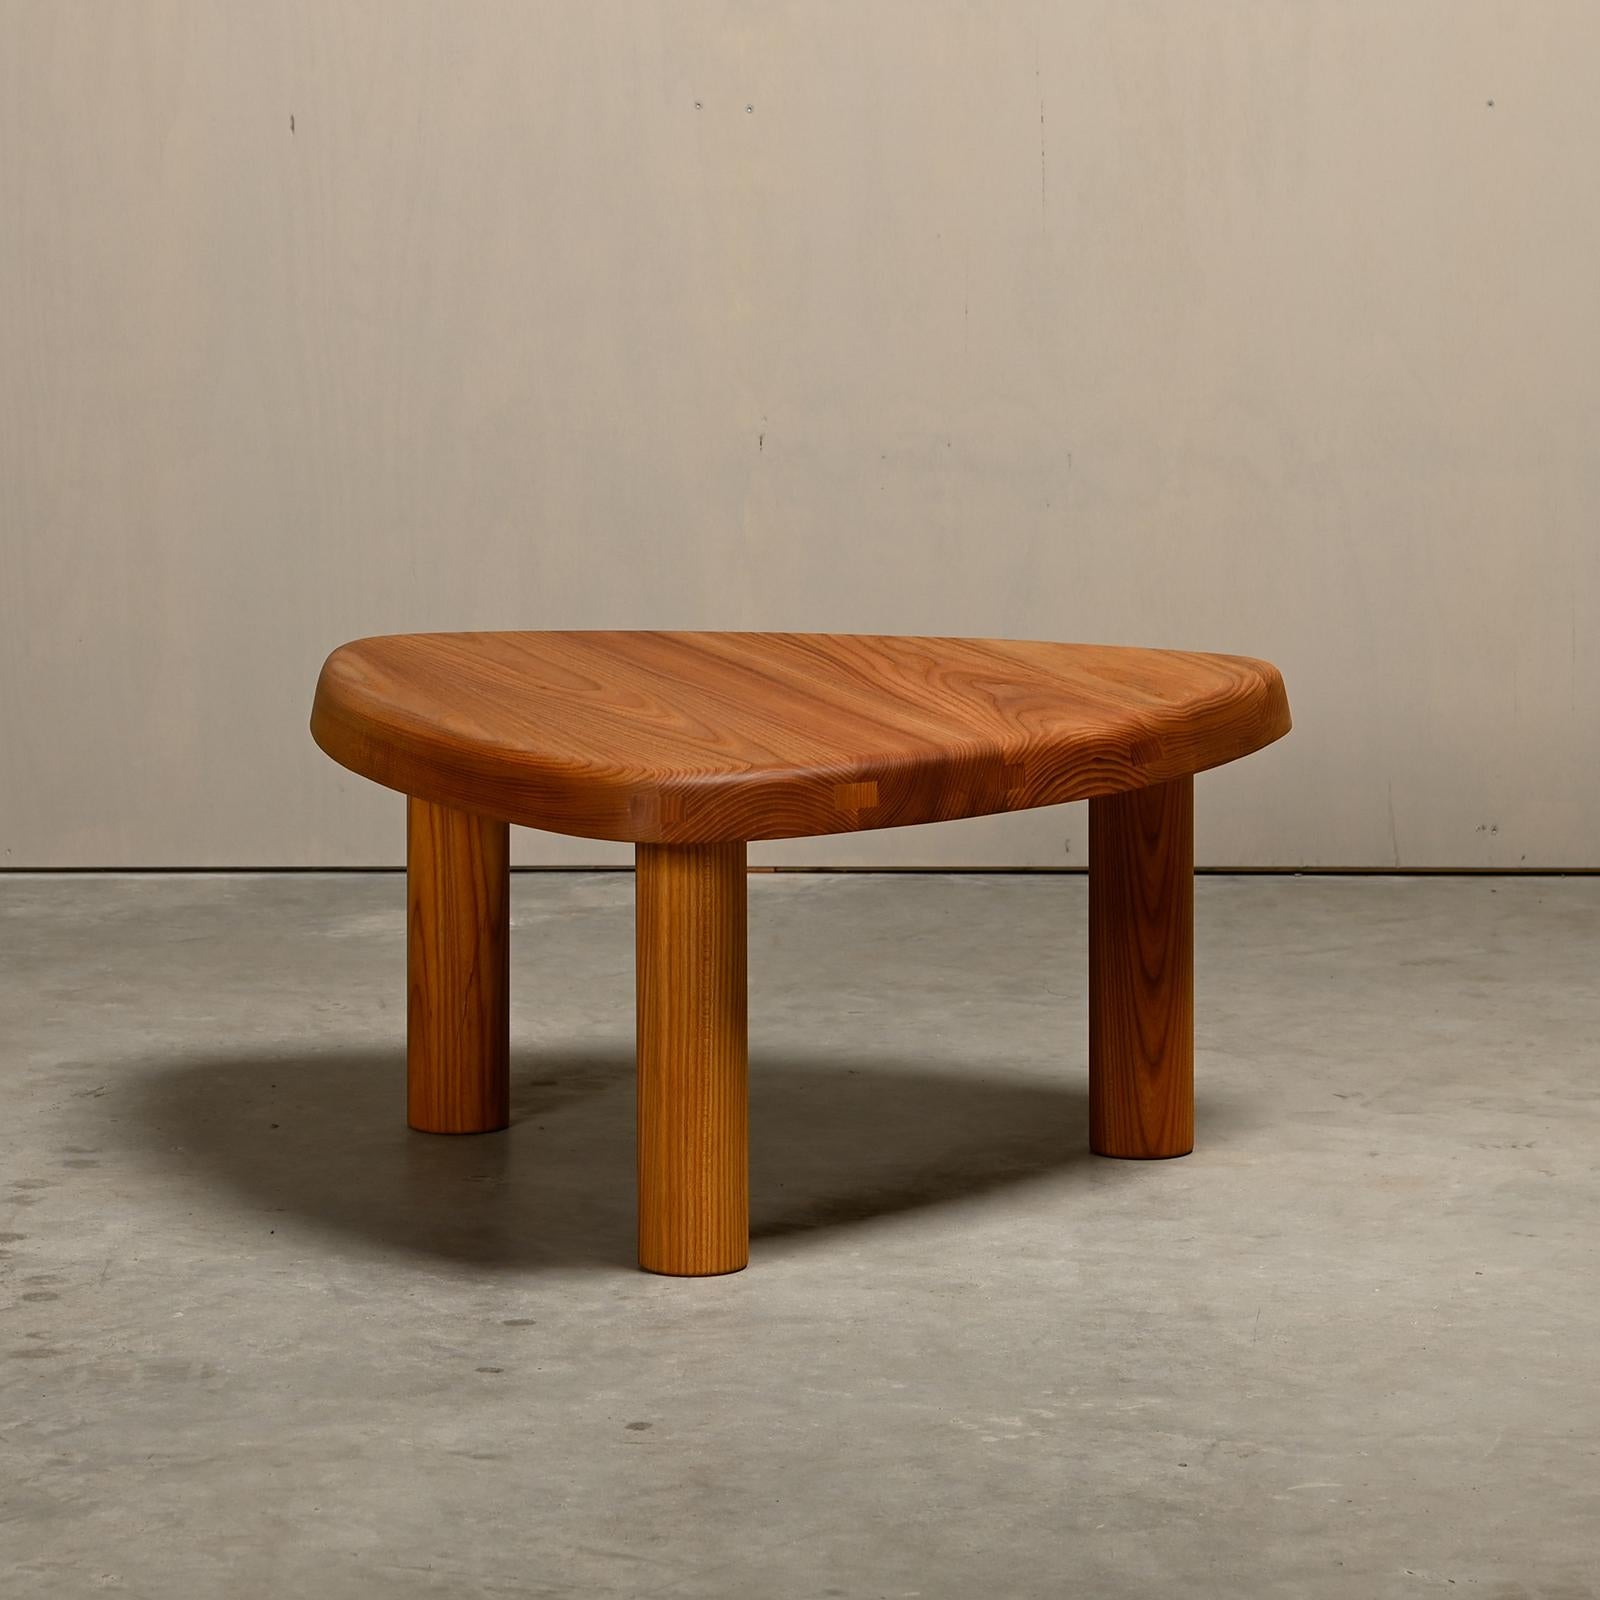 Table basse T23 (Modèle A) conçue par Pierre Chapo vers 1960 et fabriquée par Chapo Création en France, 2024. Bois d'orme massif fini à l'huile naturelle. Excellent état d'origine et signé du cachet de fabrication. Cette table peut également être